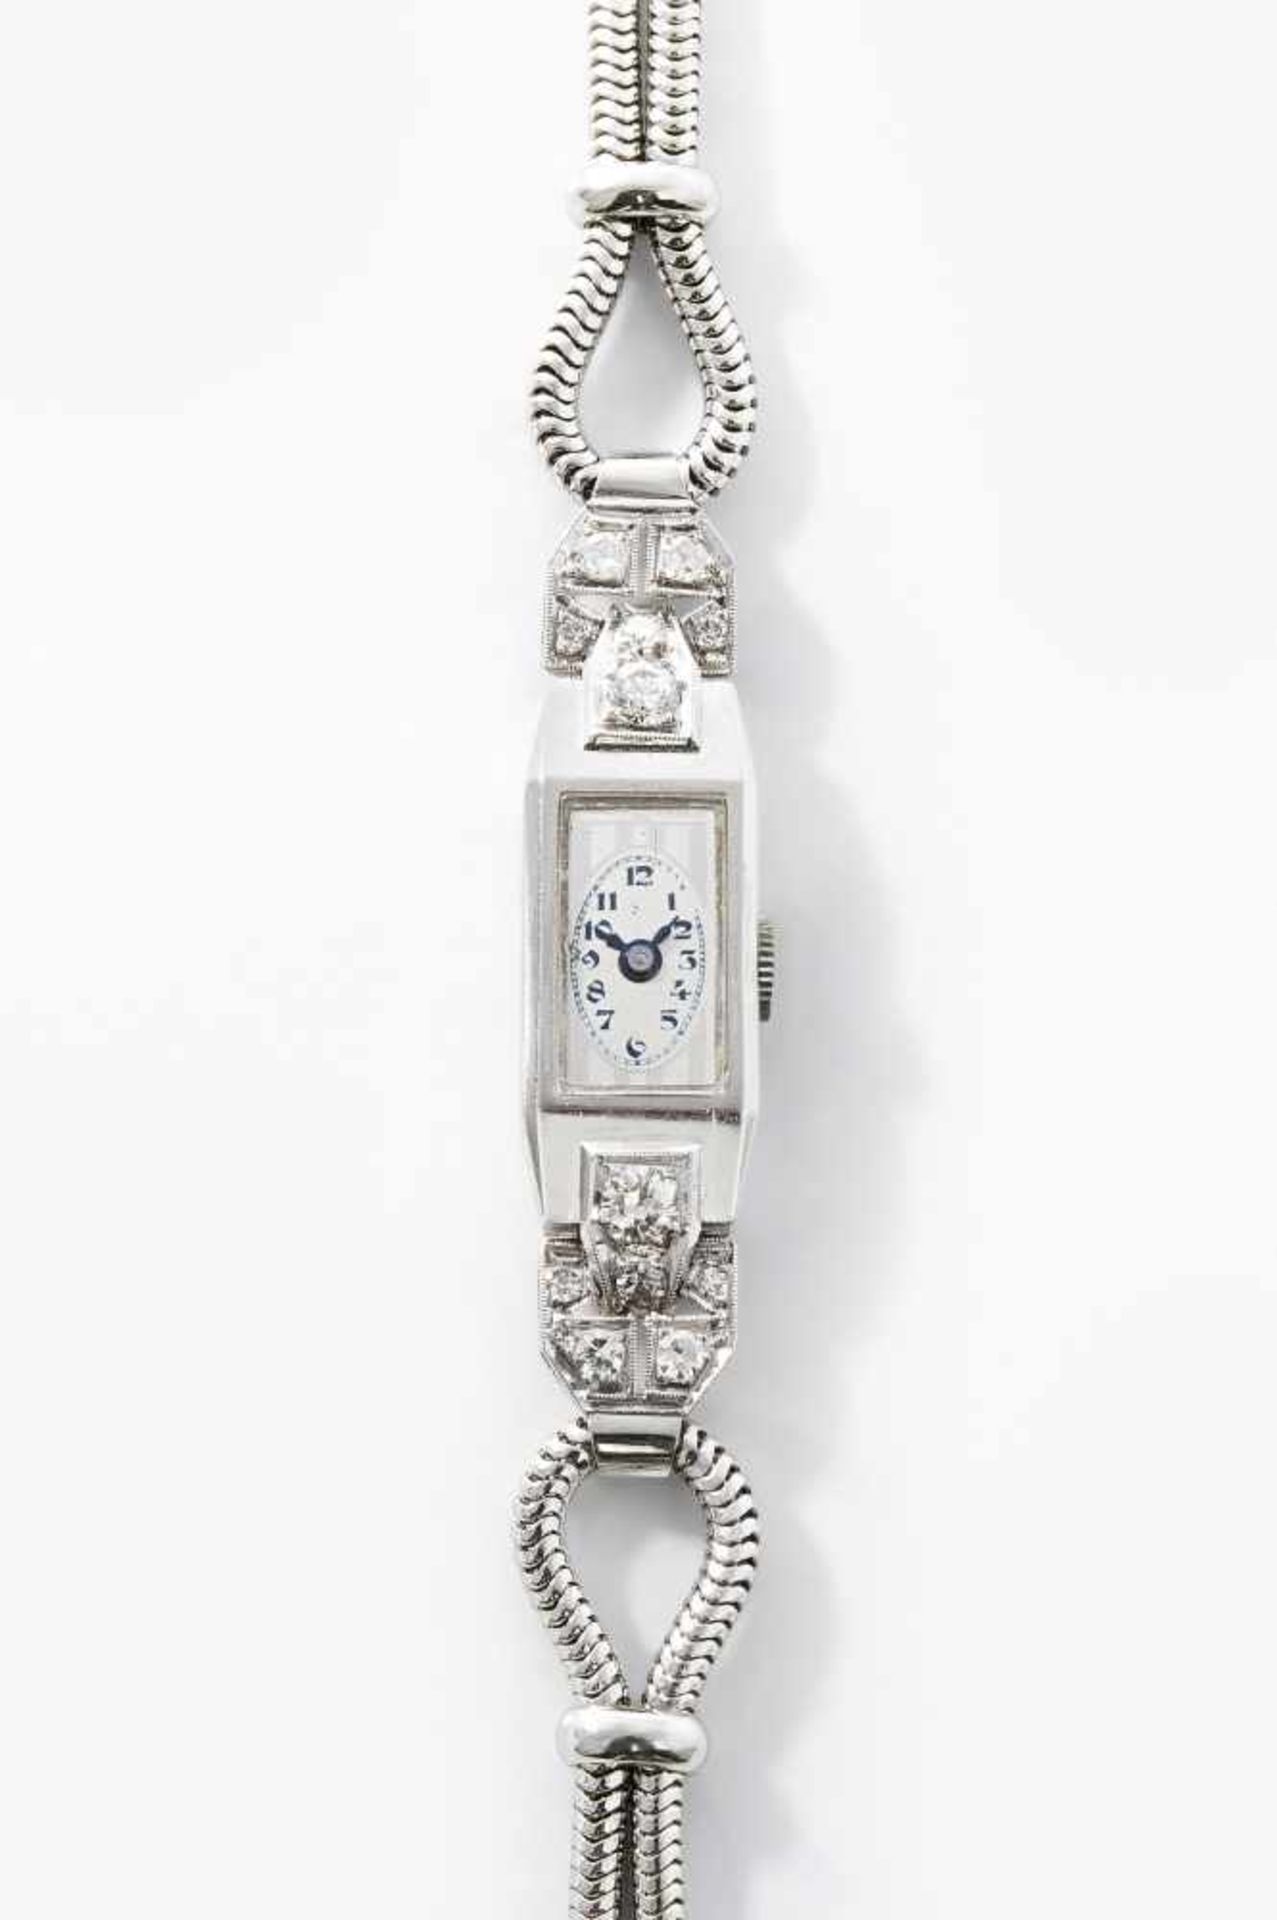 Rado Diamant-DamenarmbanduhrSpätes Art Déco, um 1937. Handaufzug Rado & Watch Co. Platingehäuse